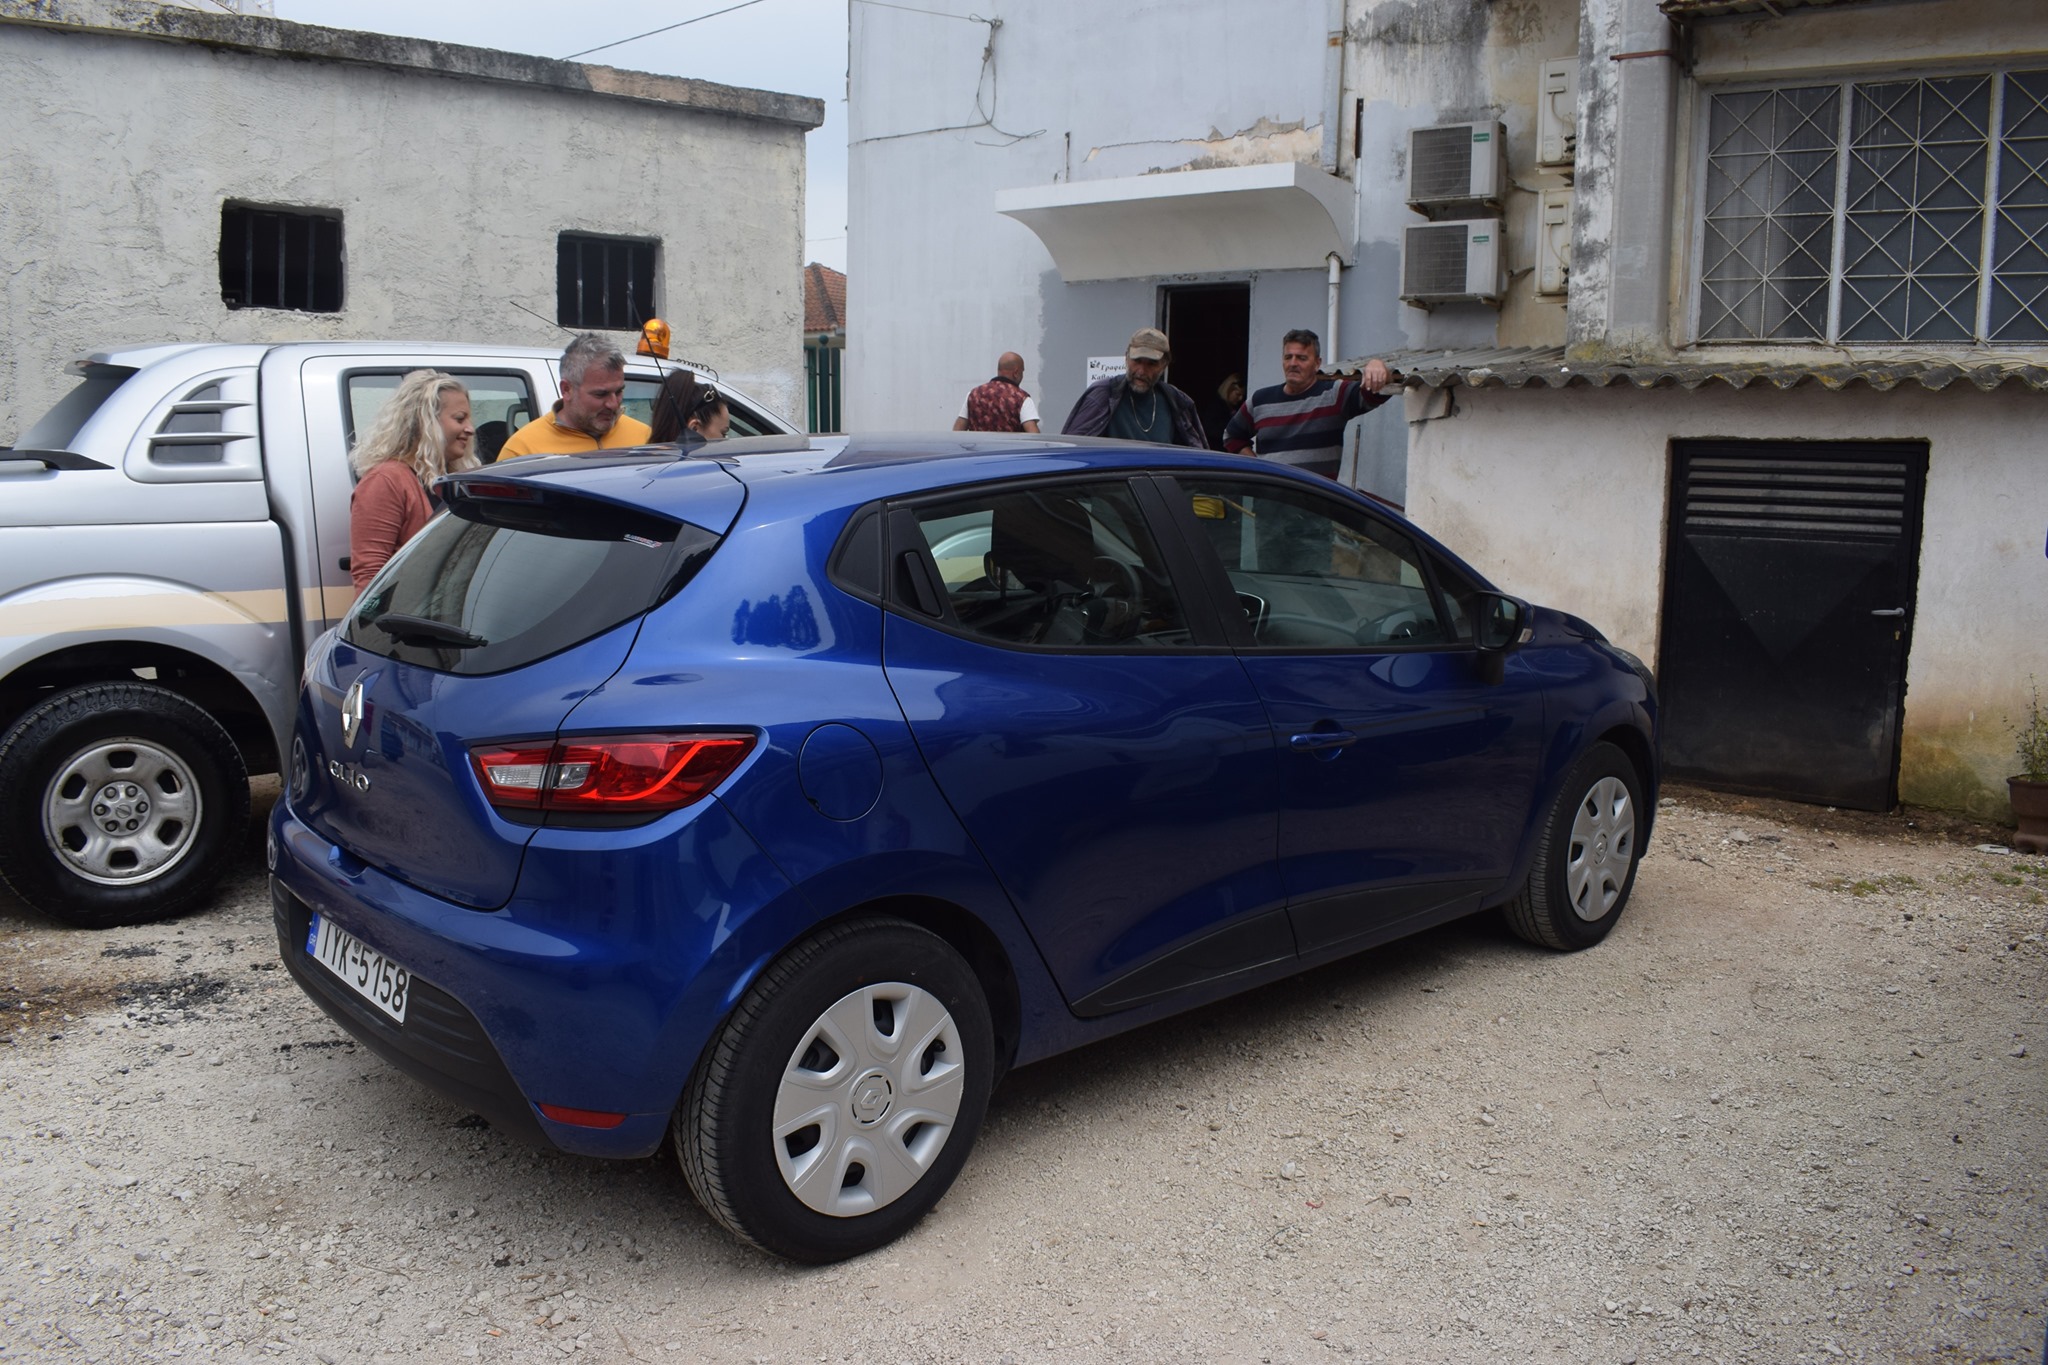 Δήμος Ανδραβίδας-Κυλλήνης: Παραλαβή δυο οχημάτων ύστερα από πρωτοβουλία της ΚΕΔΕ για την ενίσχυση της «Βοήθειας στο σπίτι» (photos)